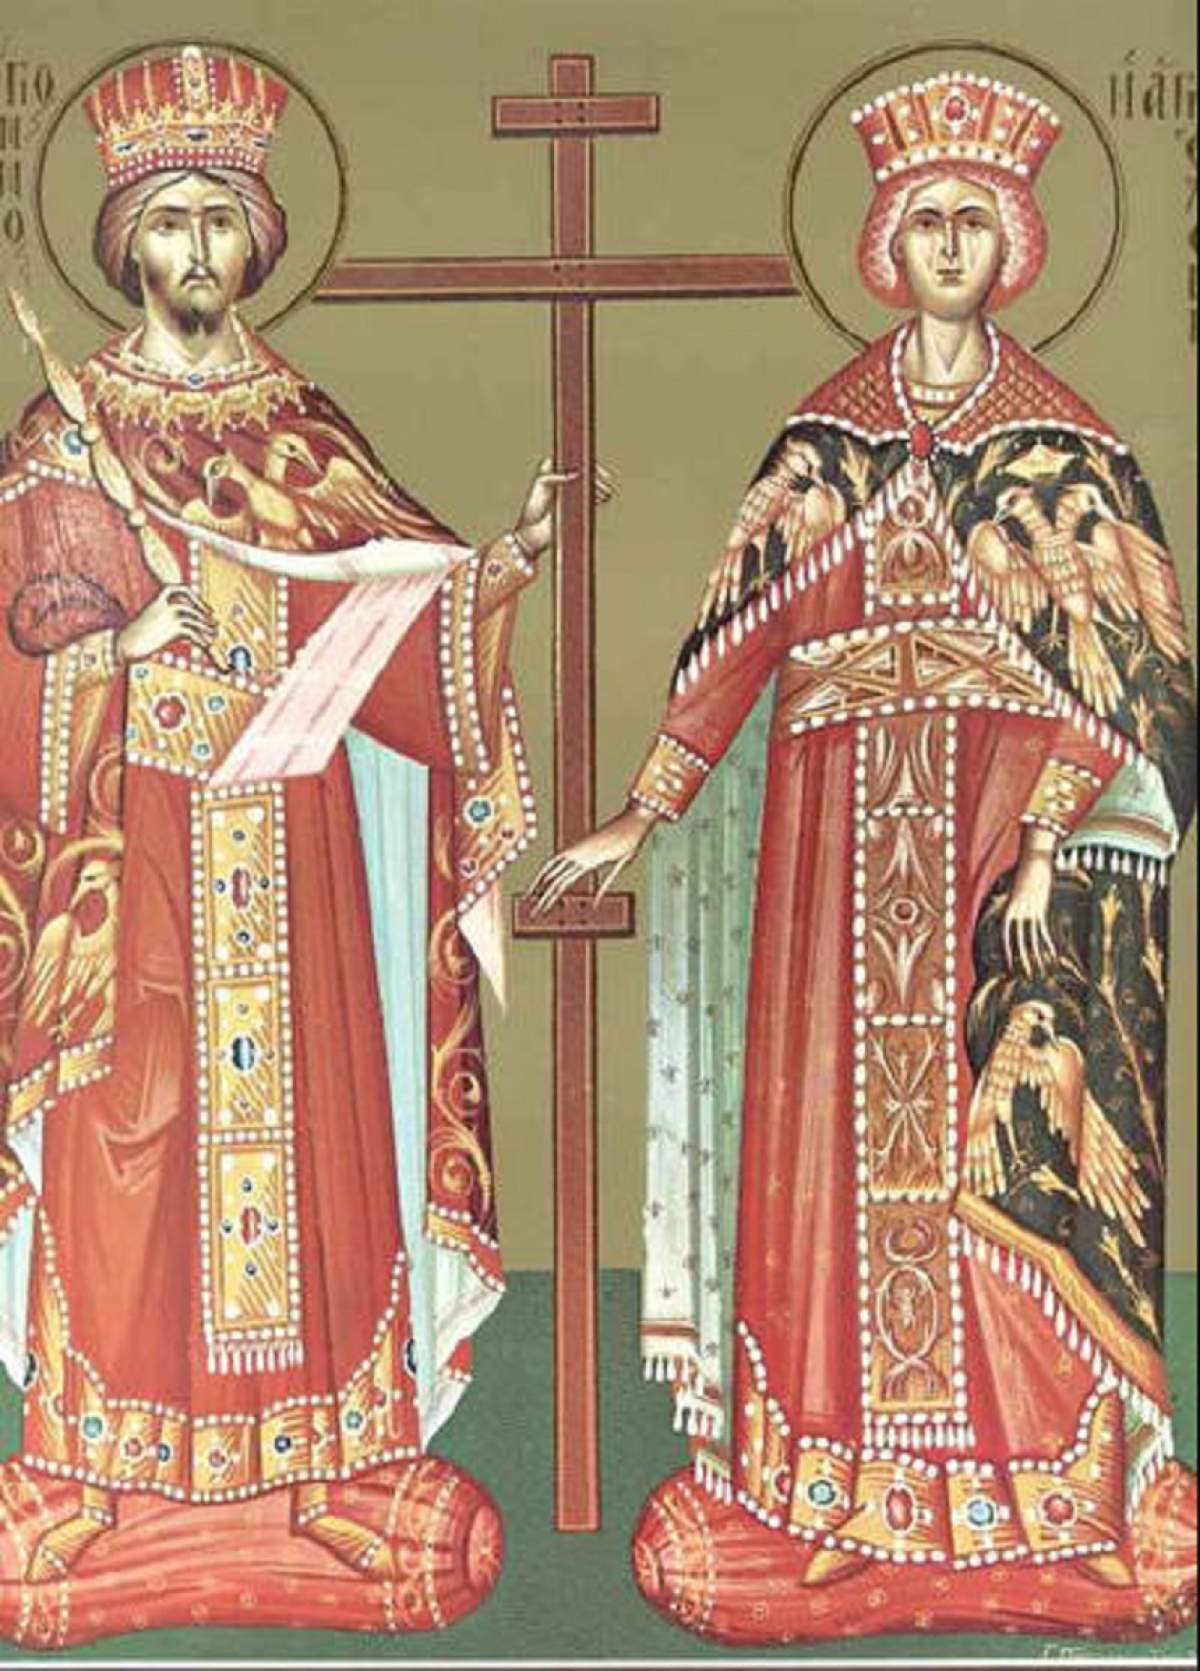 Sfinţii Împăraţi Constantin şi Elena, tradiţii şi obiceiuri! Ce să nu faci sub nicio formă pe 21 Mai